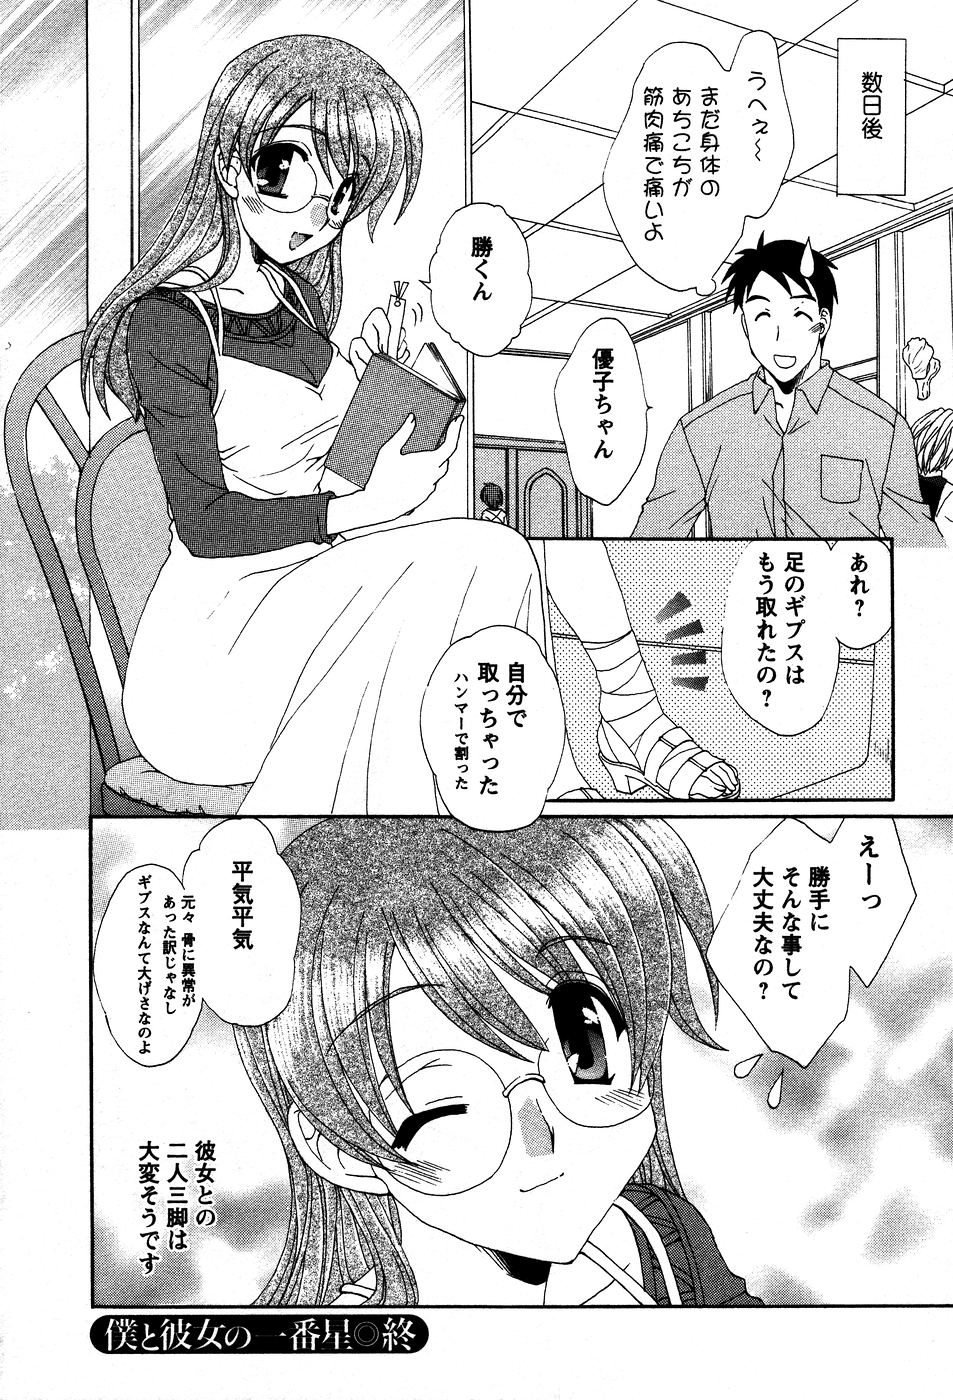 [Kurokawa Mio] Usagi no Hanayome - Rabbit Bride 134